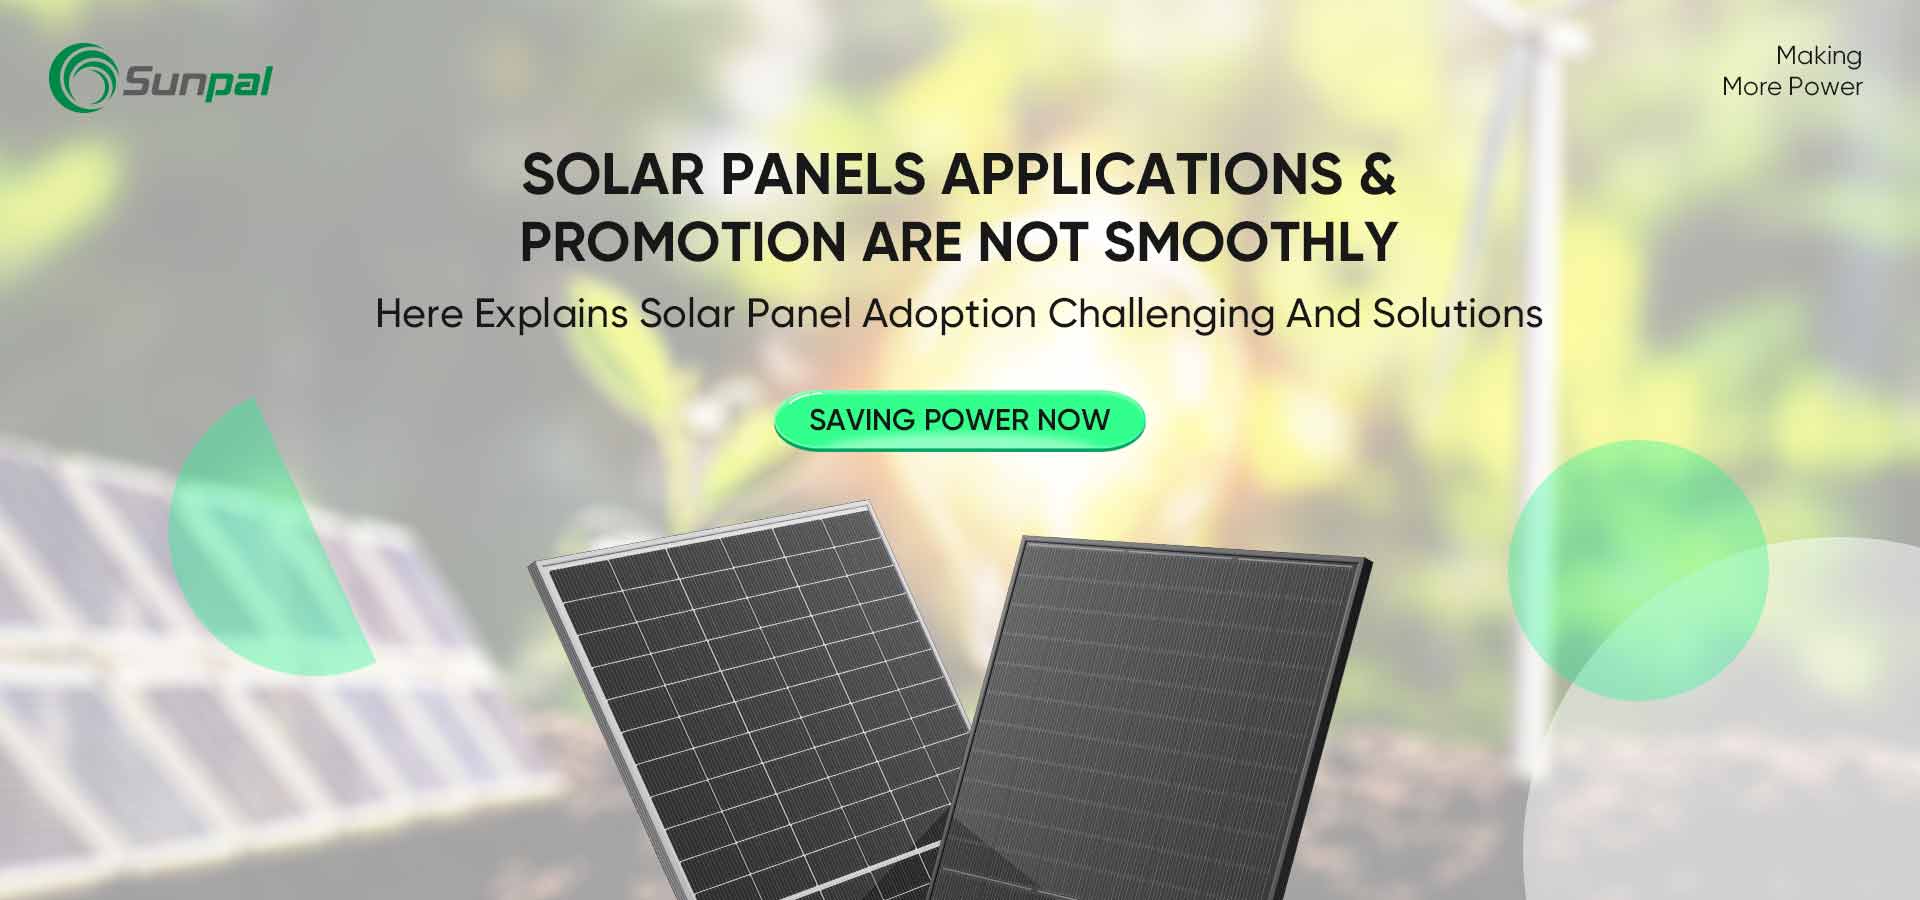 Desafiando y superando barreras en la adopción de paneles solares